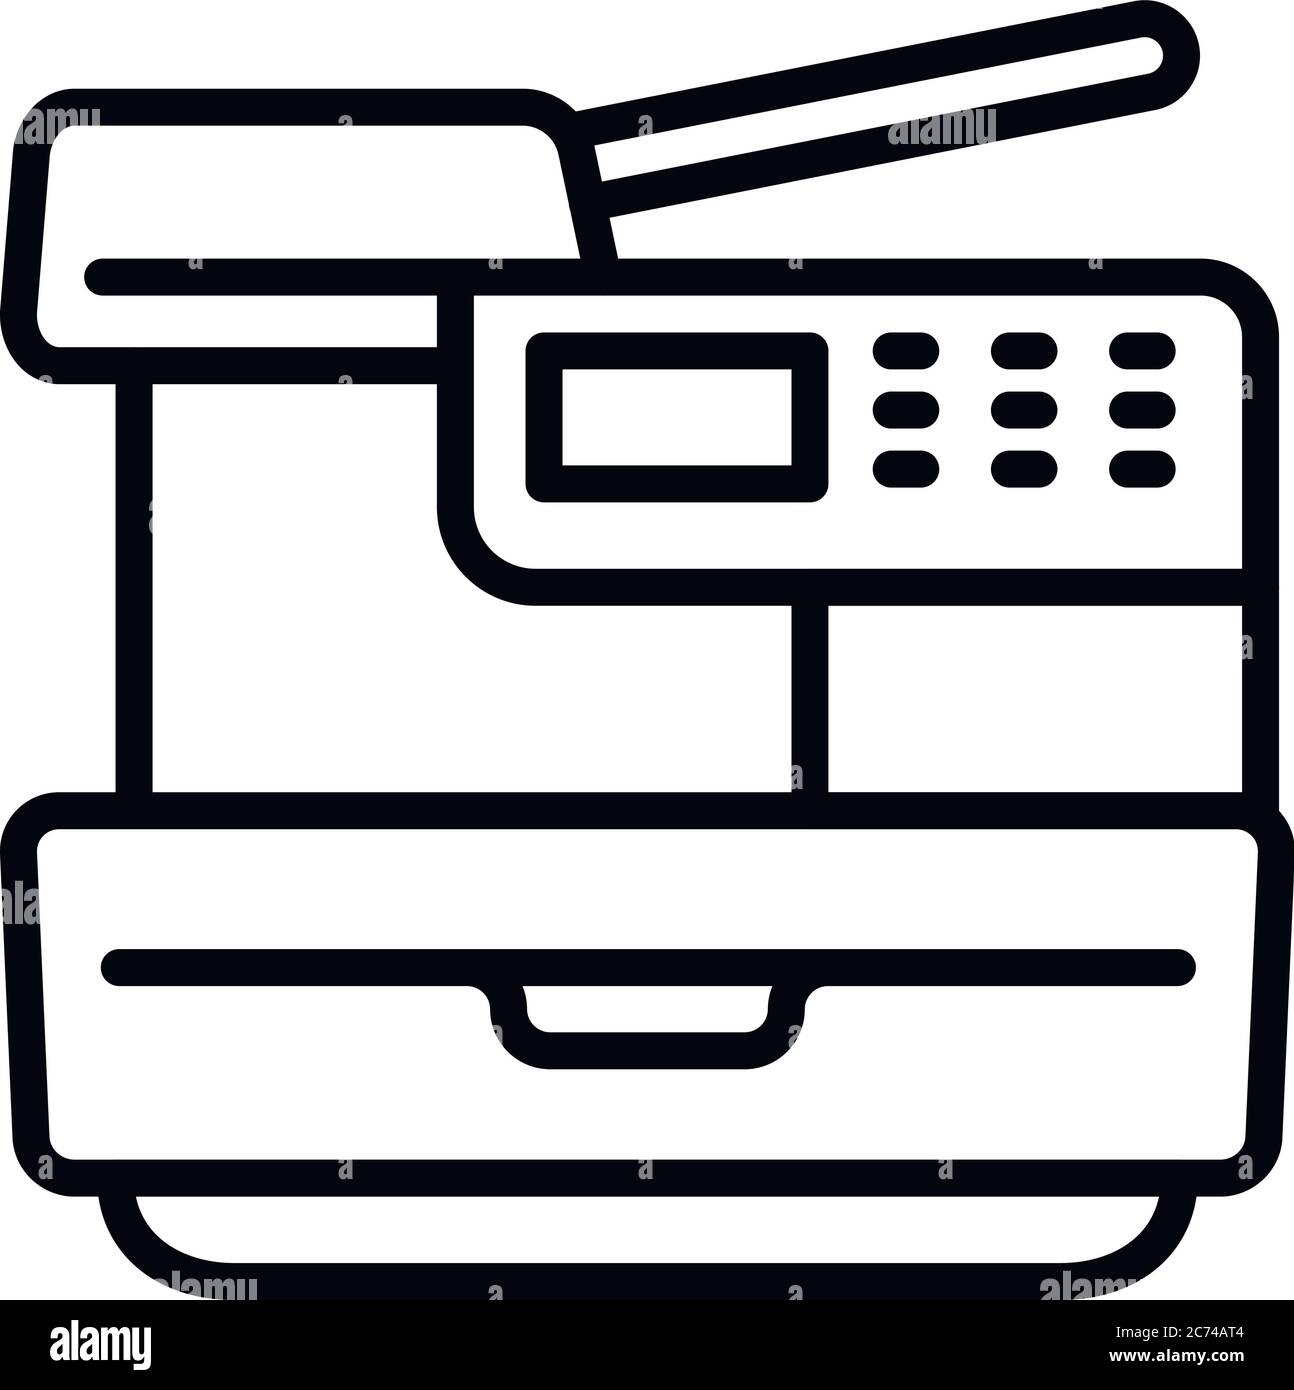 Icona della stampante. Profilo stampante icona vettoriali per il web design isolato su sfondo bianco Illustrazione Vettoriale